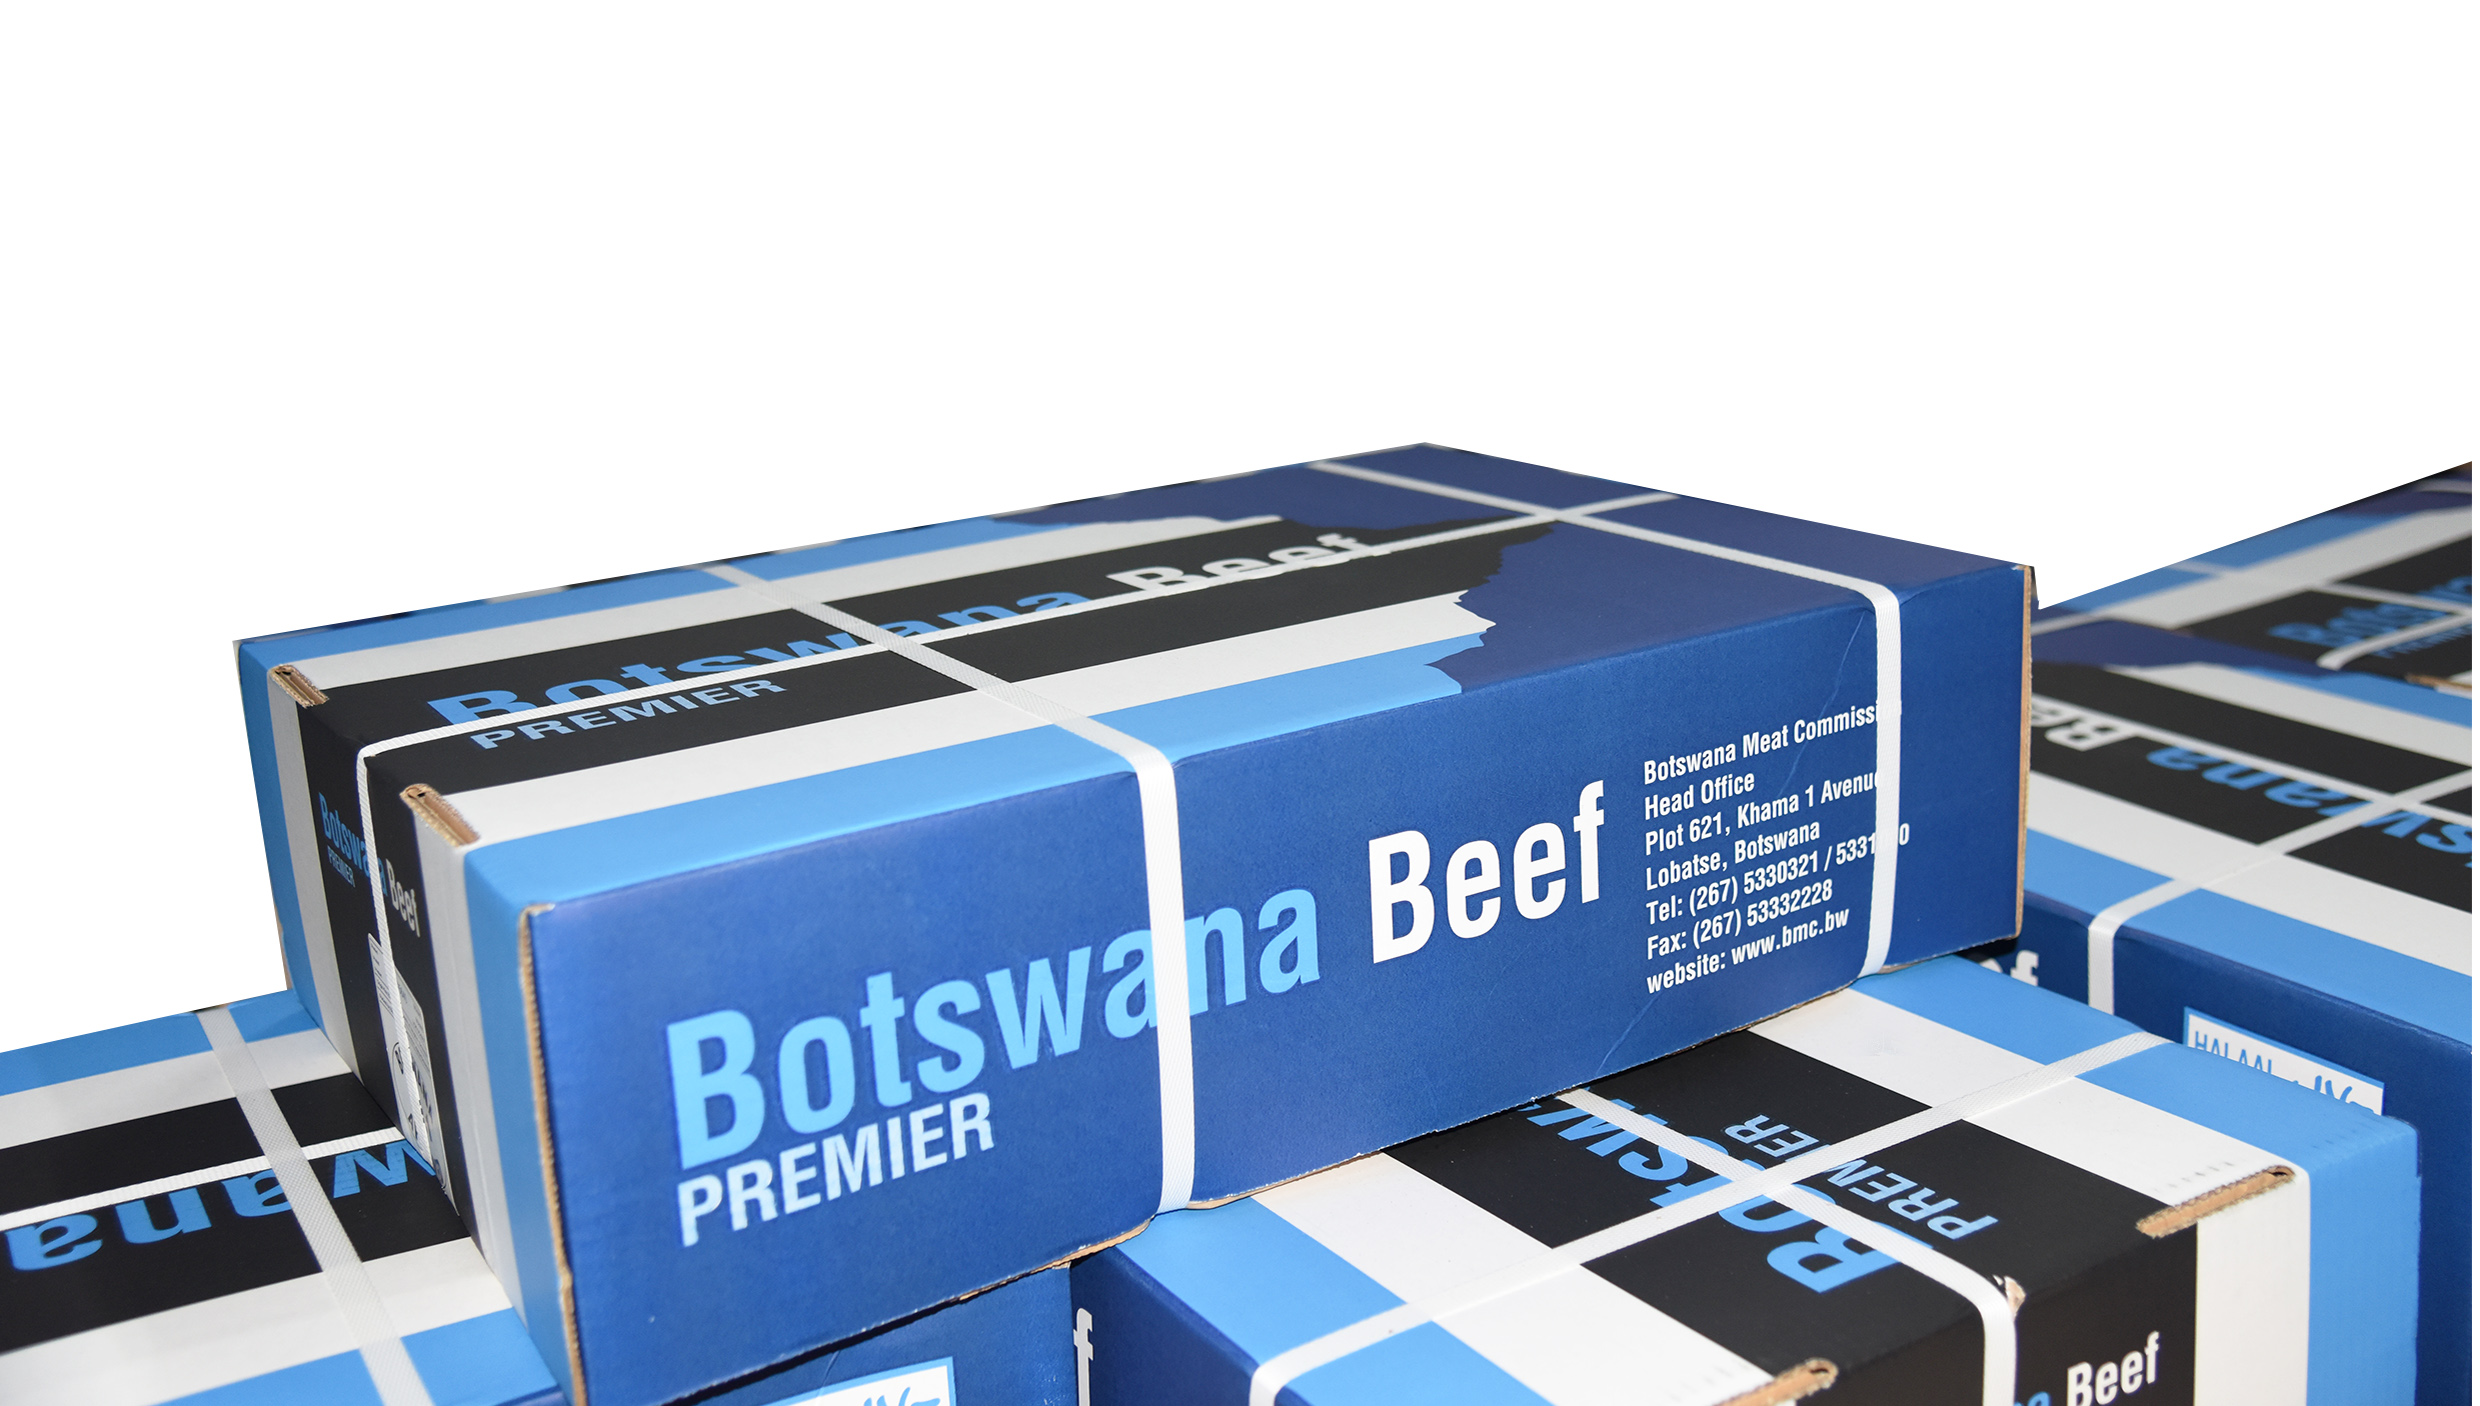 BOTSWANA DELEGATION VISITS NORWAY, GERMANY AND THE United Kingdom (UK) TO PROMOTE BOTSWANA BEEF